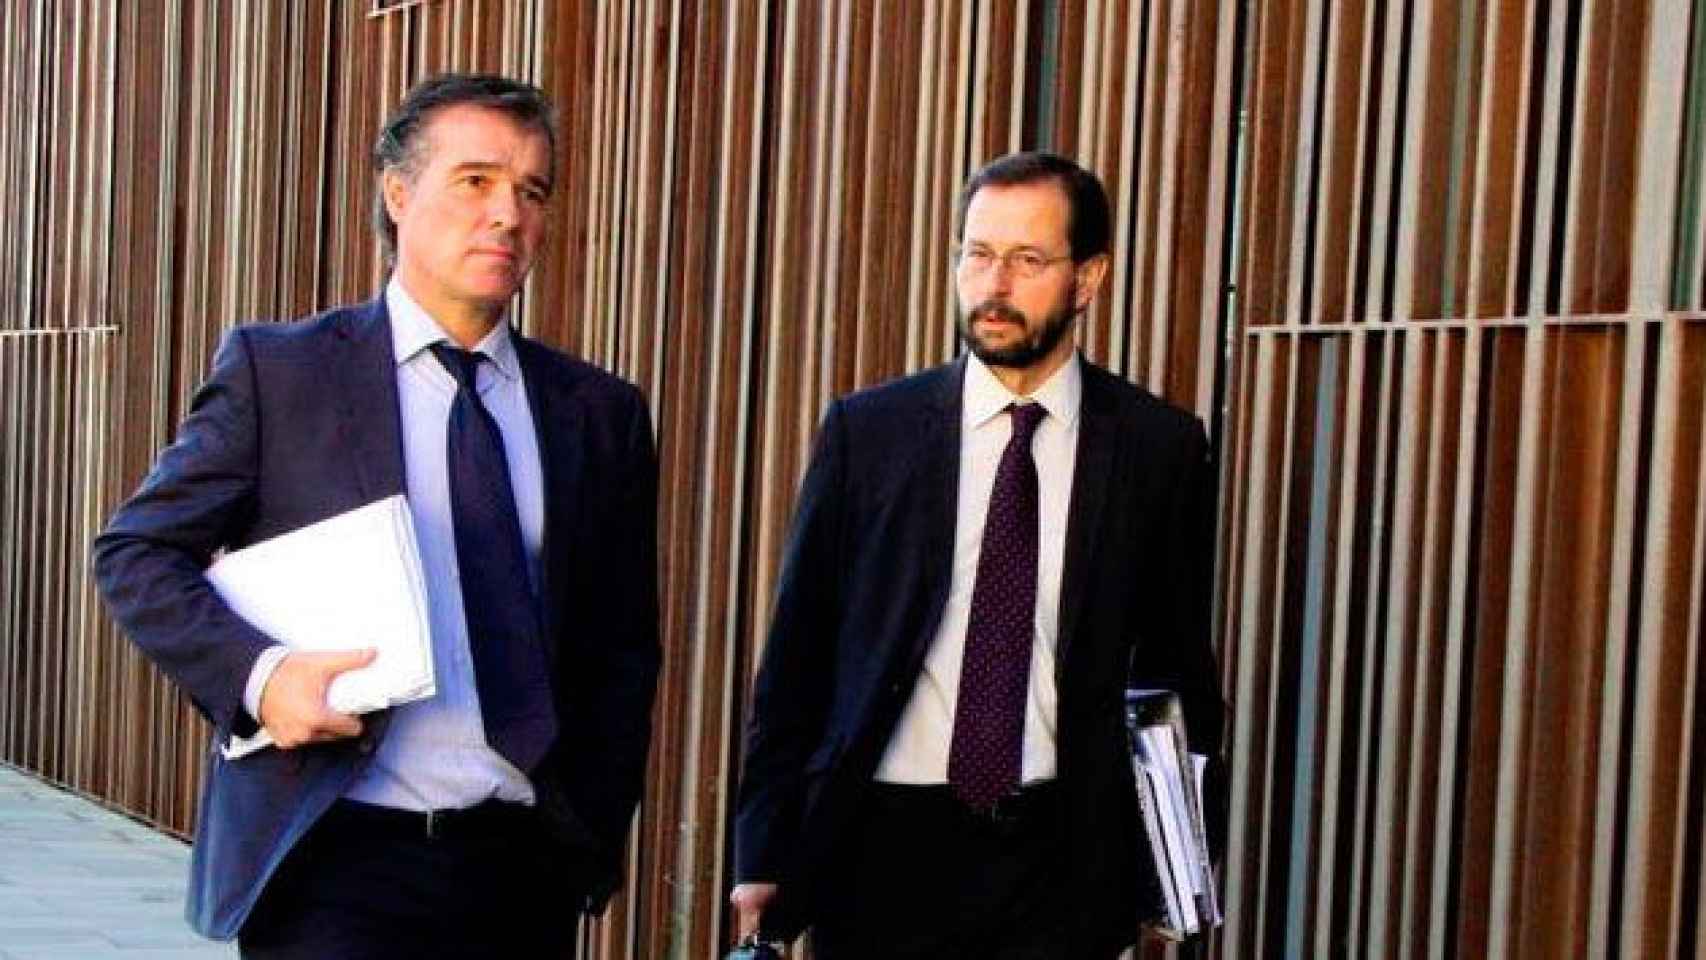 Los fiscales anticorrupción Fernando Bermejo y José Grinda saliendo de los juzgados del Vendrell / CG